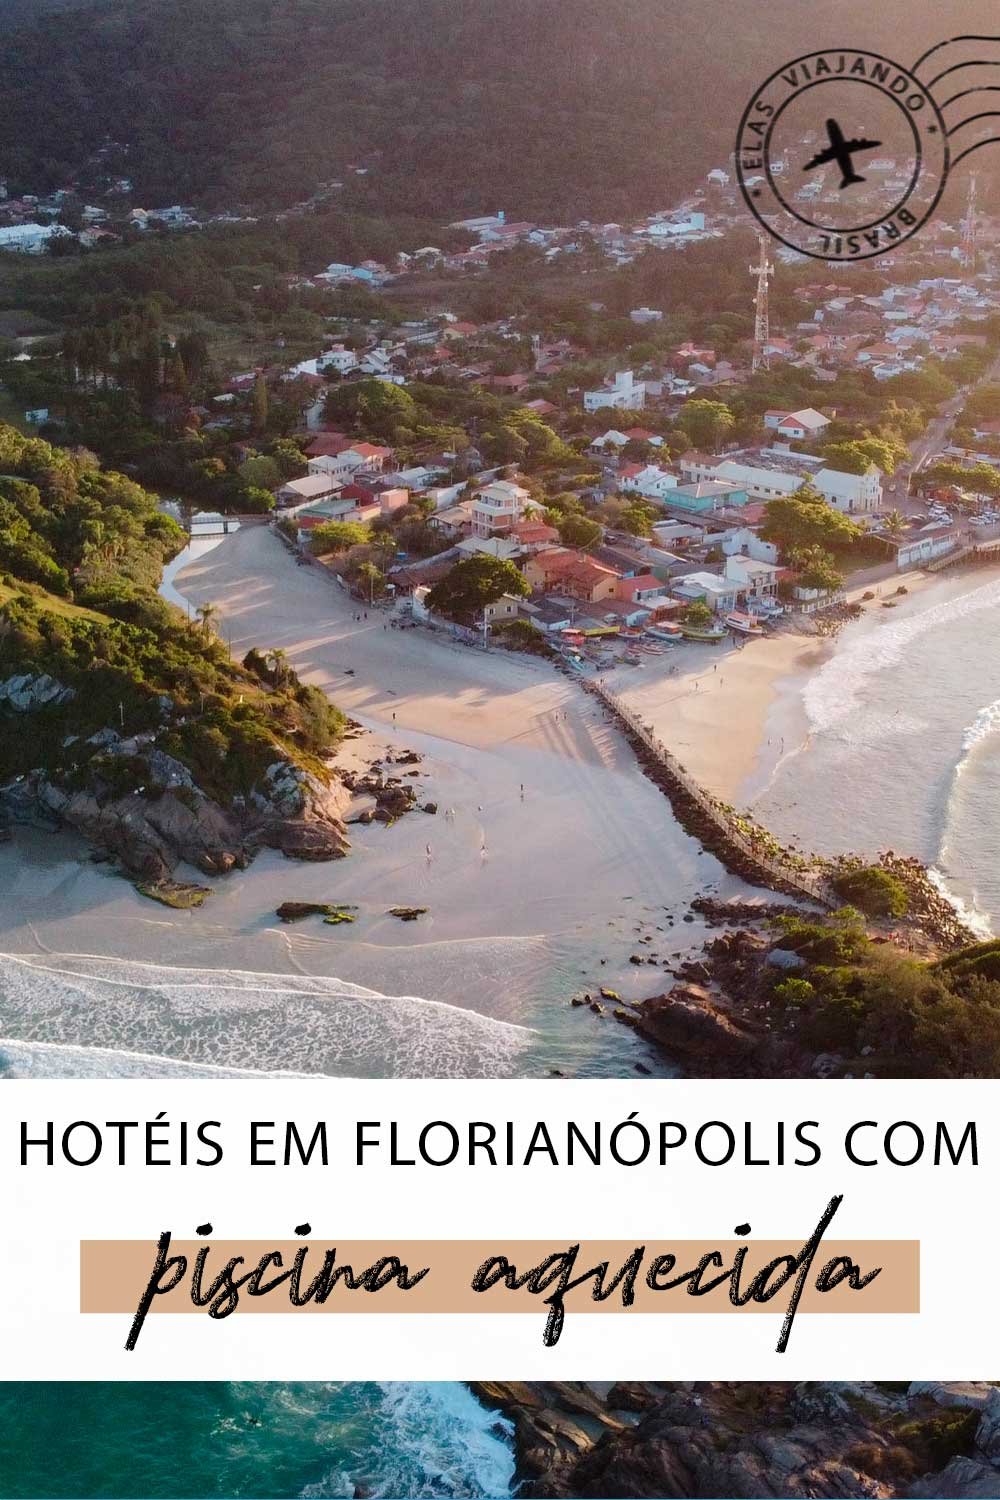 Hotel em Florianópolis com piscina aquecida